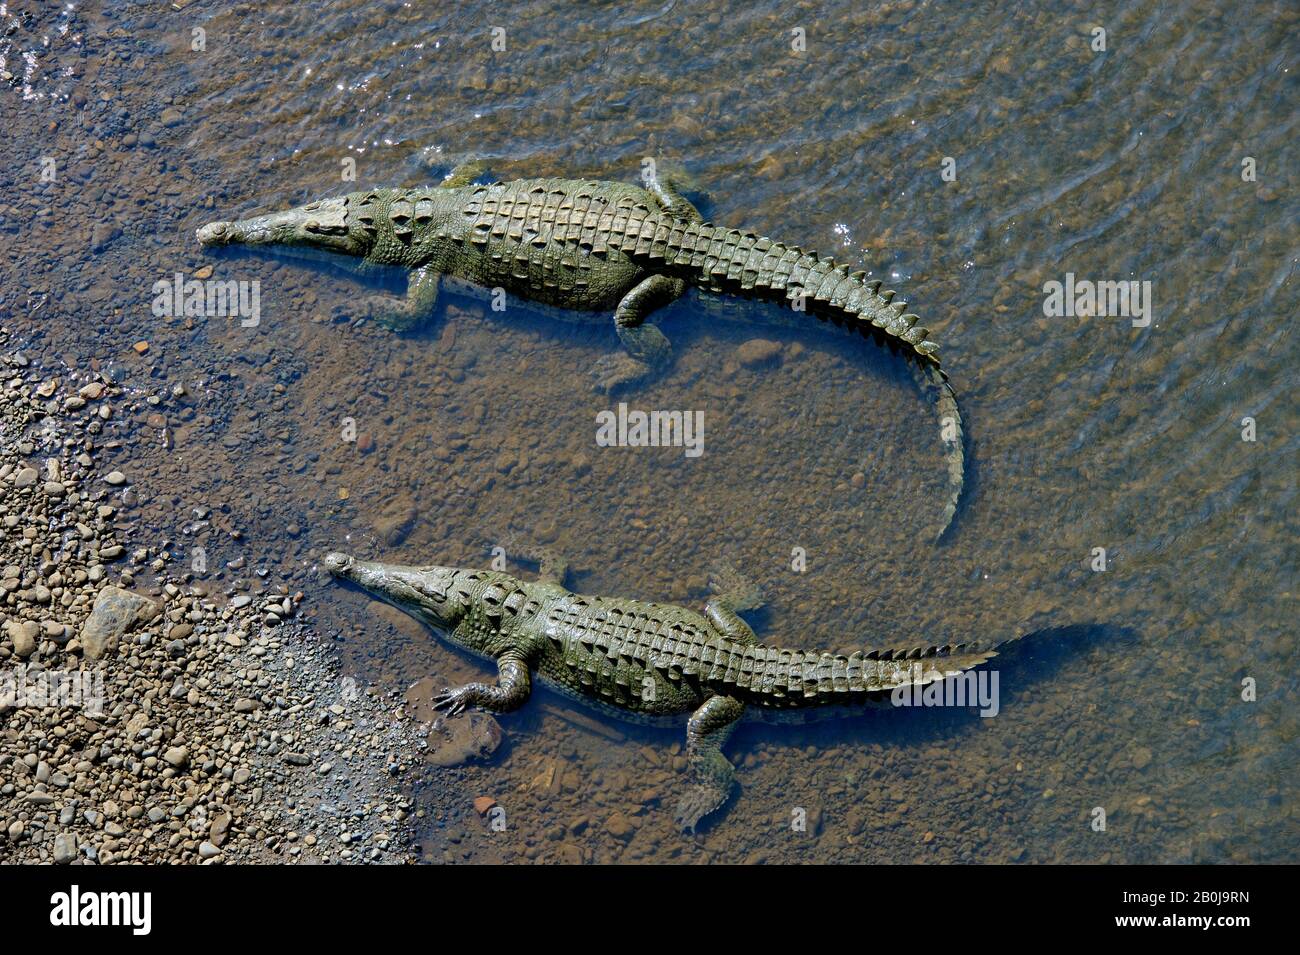 COSTA RICA, RIO TARCOLES, AMERICAN CROCODILES (Crocodylus acutus) IN RIVER Stock Photo